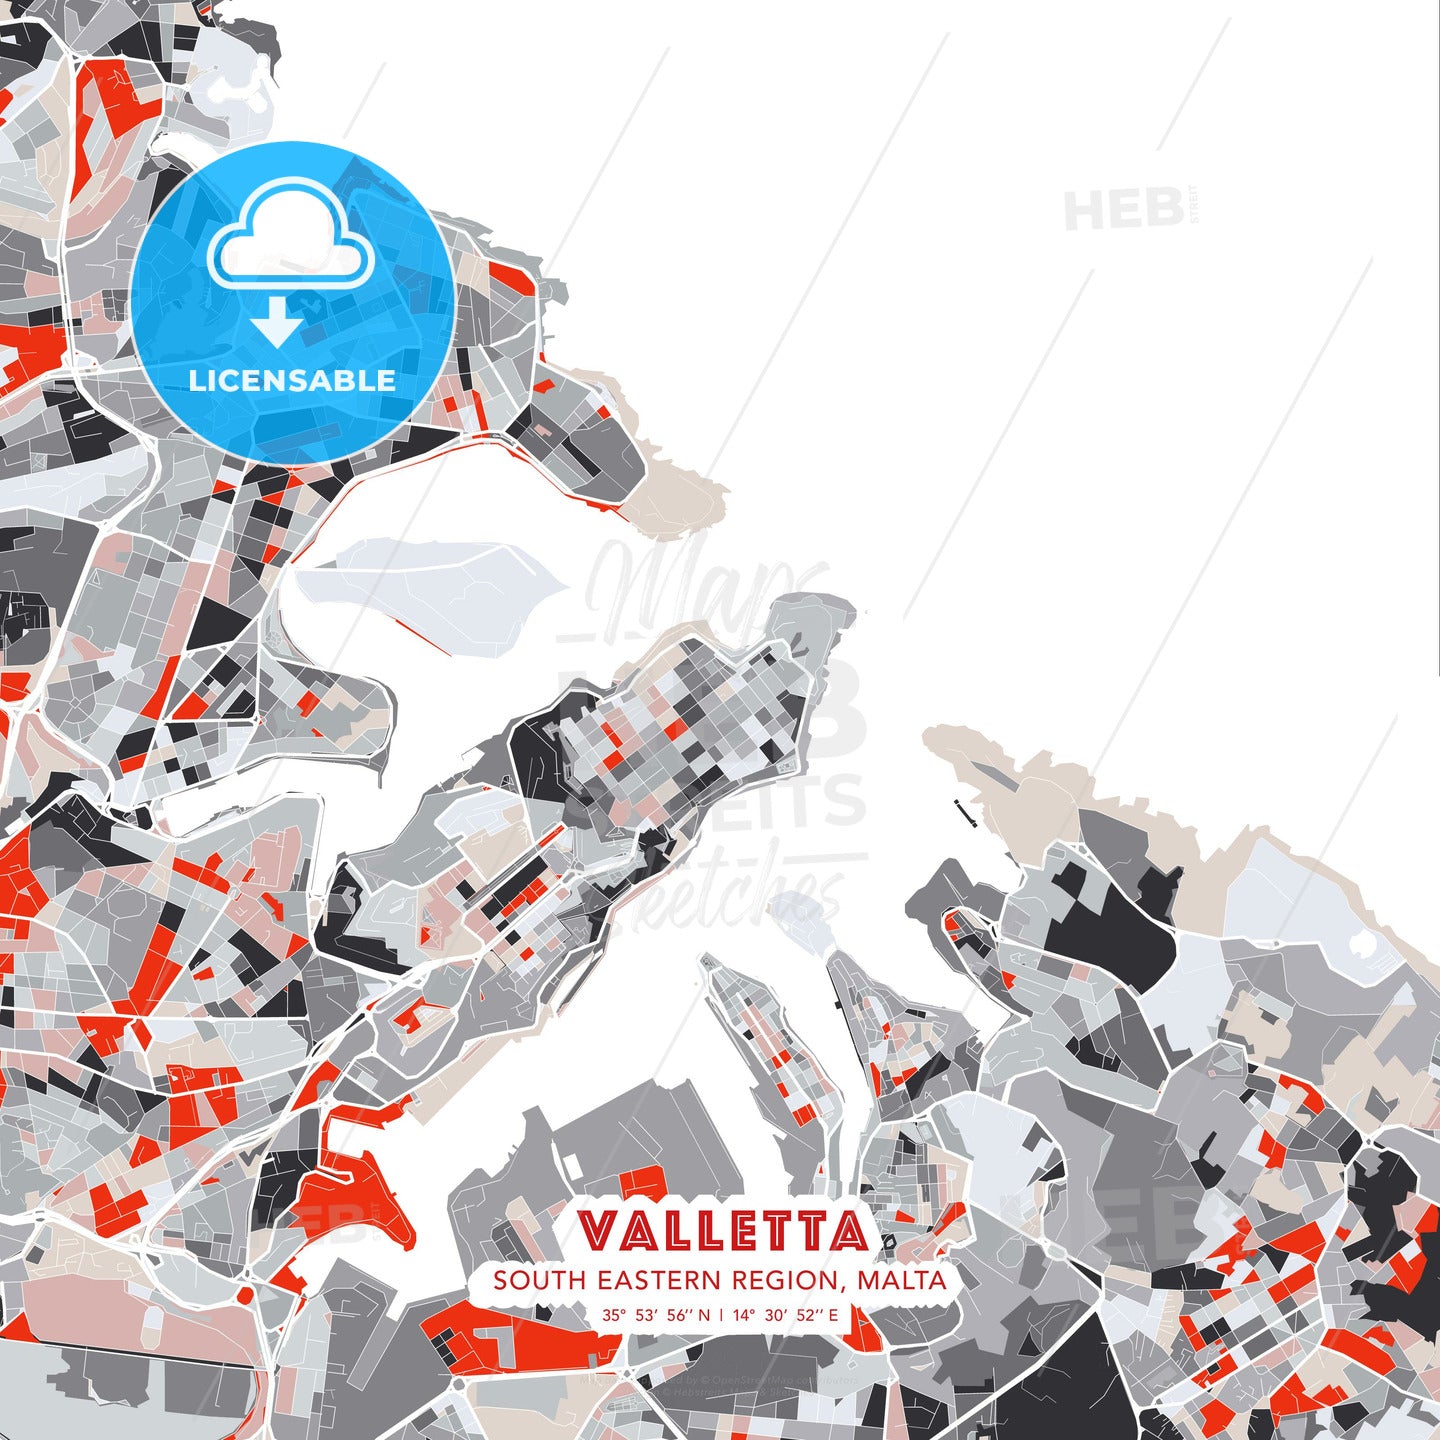 Valletta, South Eastern Region, Malta, modern map - HEBSTREITS Sketches